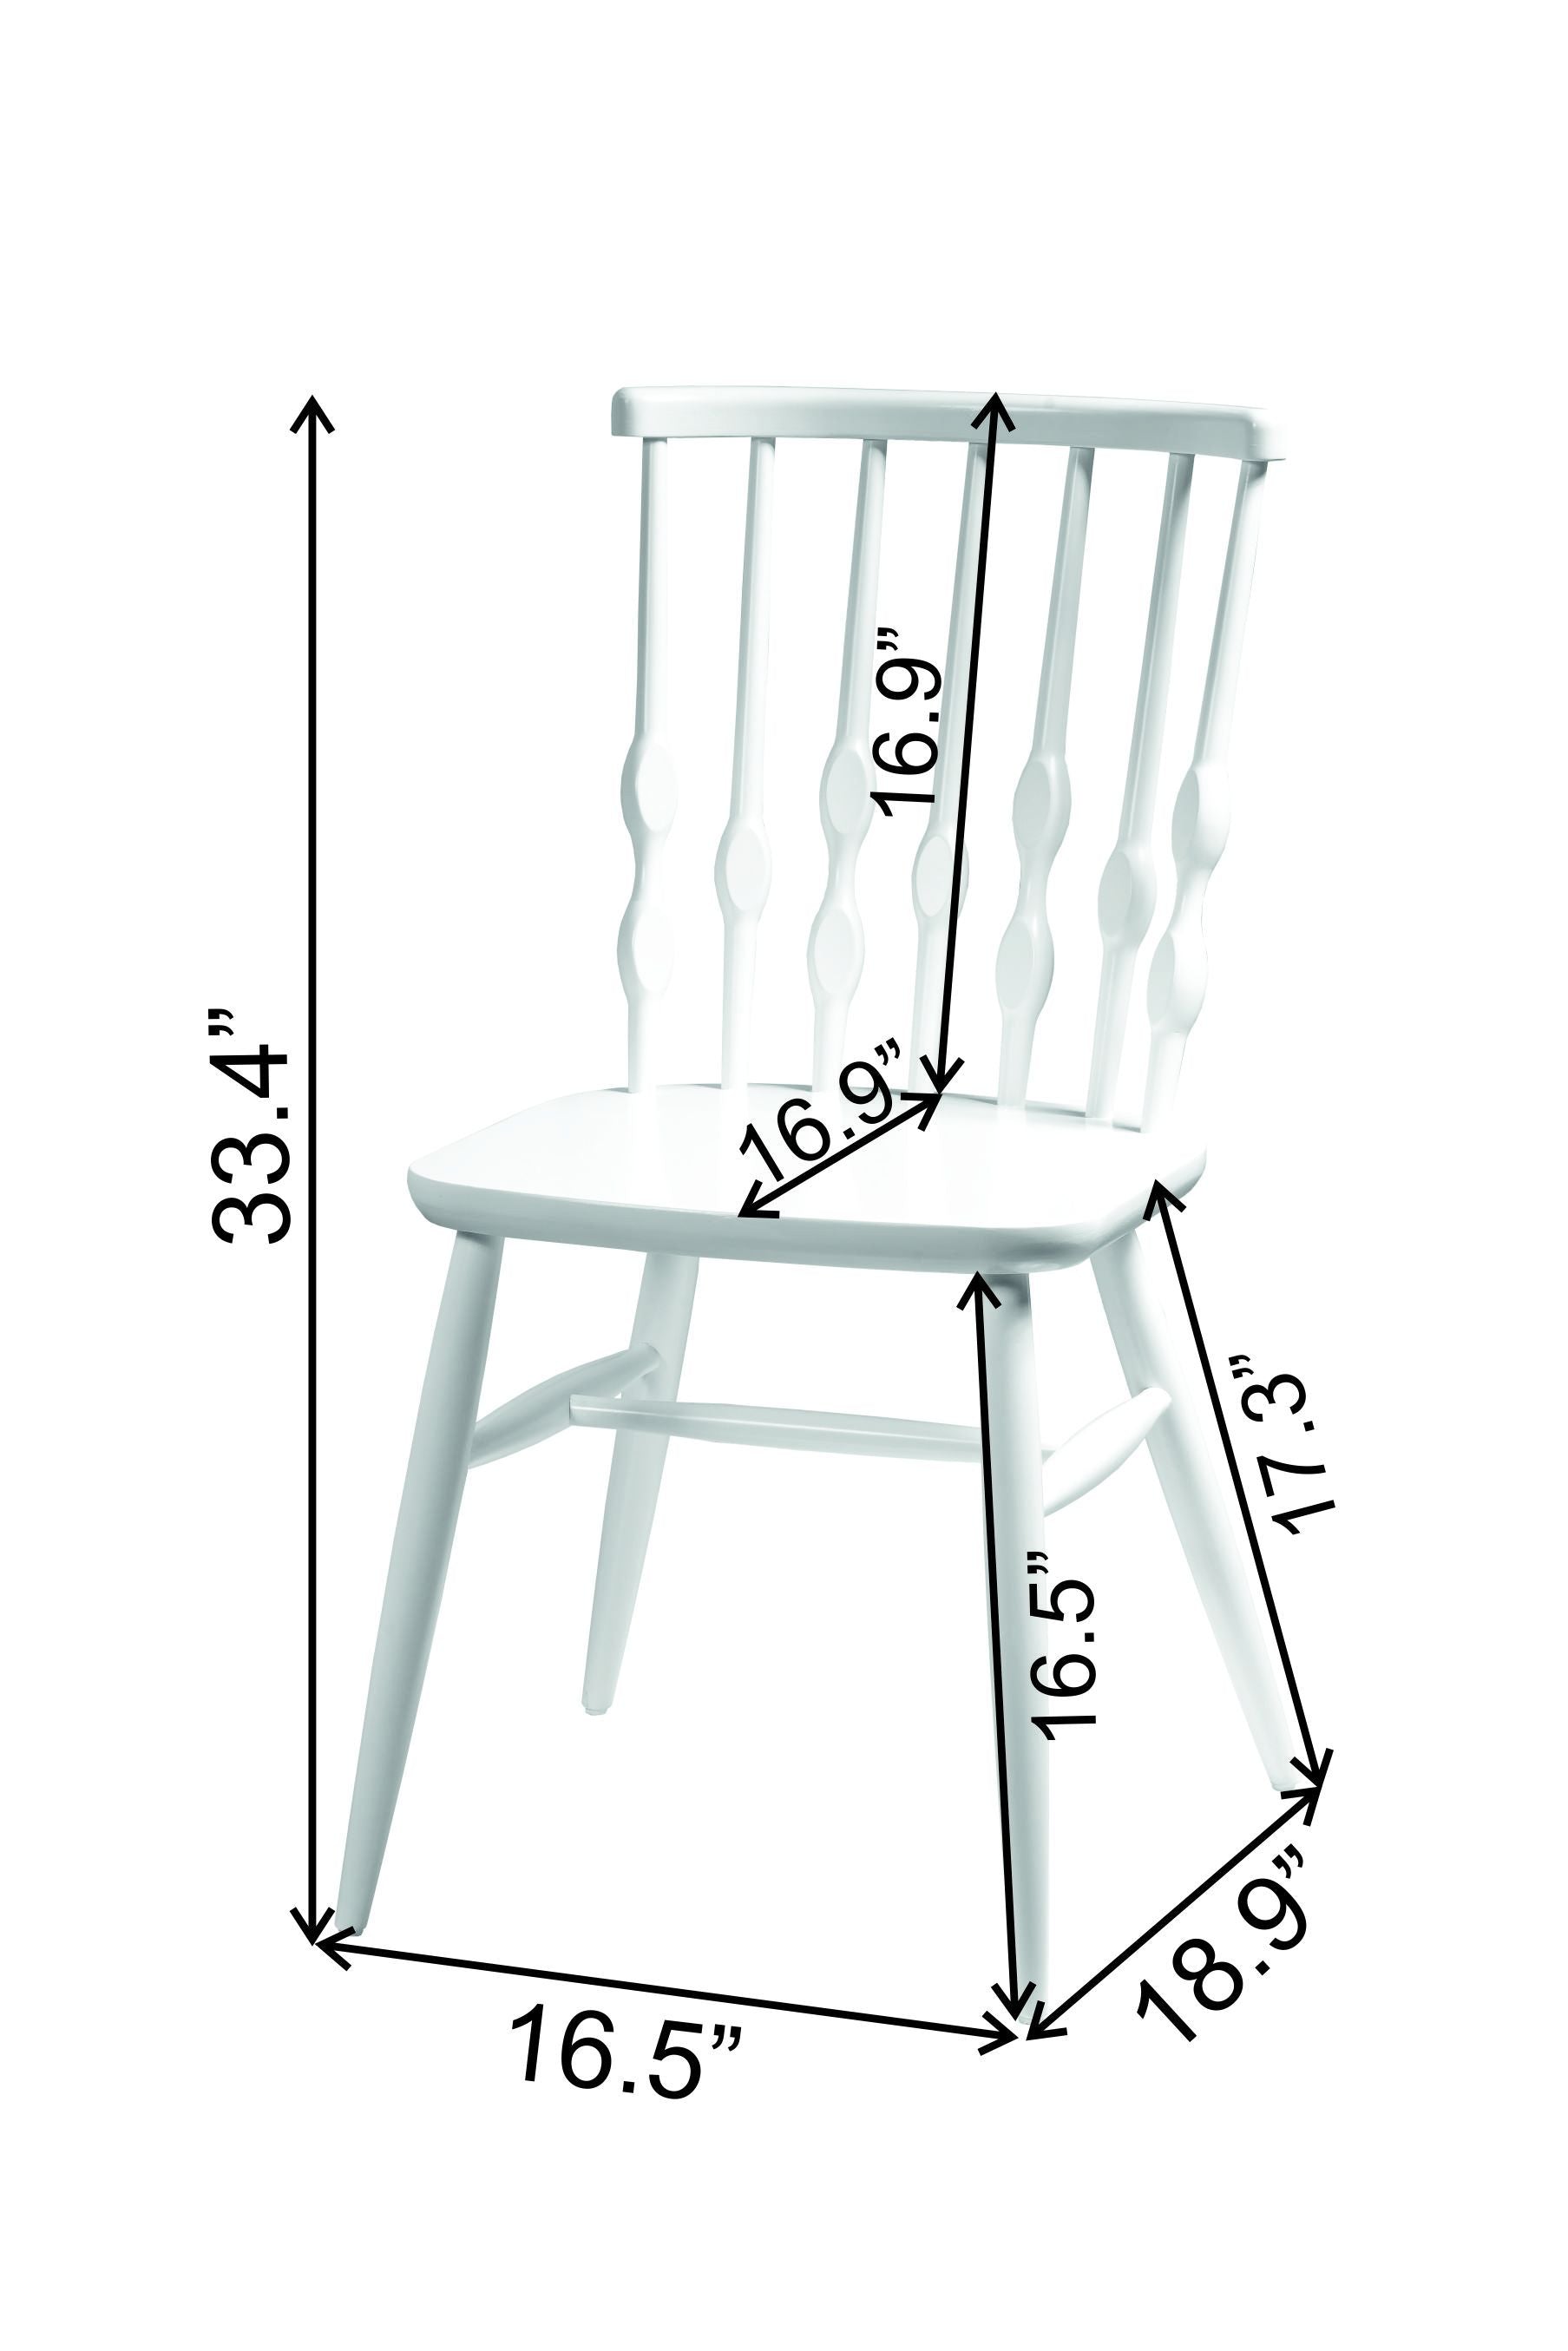 Bonjuk Solid Wood Chair - Set of 2 - 33.4" H x 16.5" W x 18.9" D - Decorotika